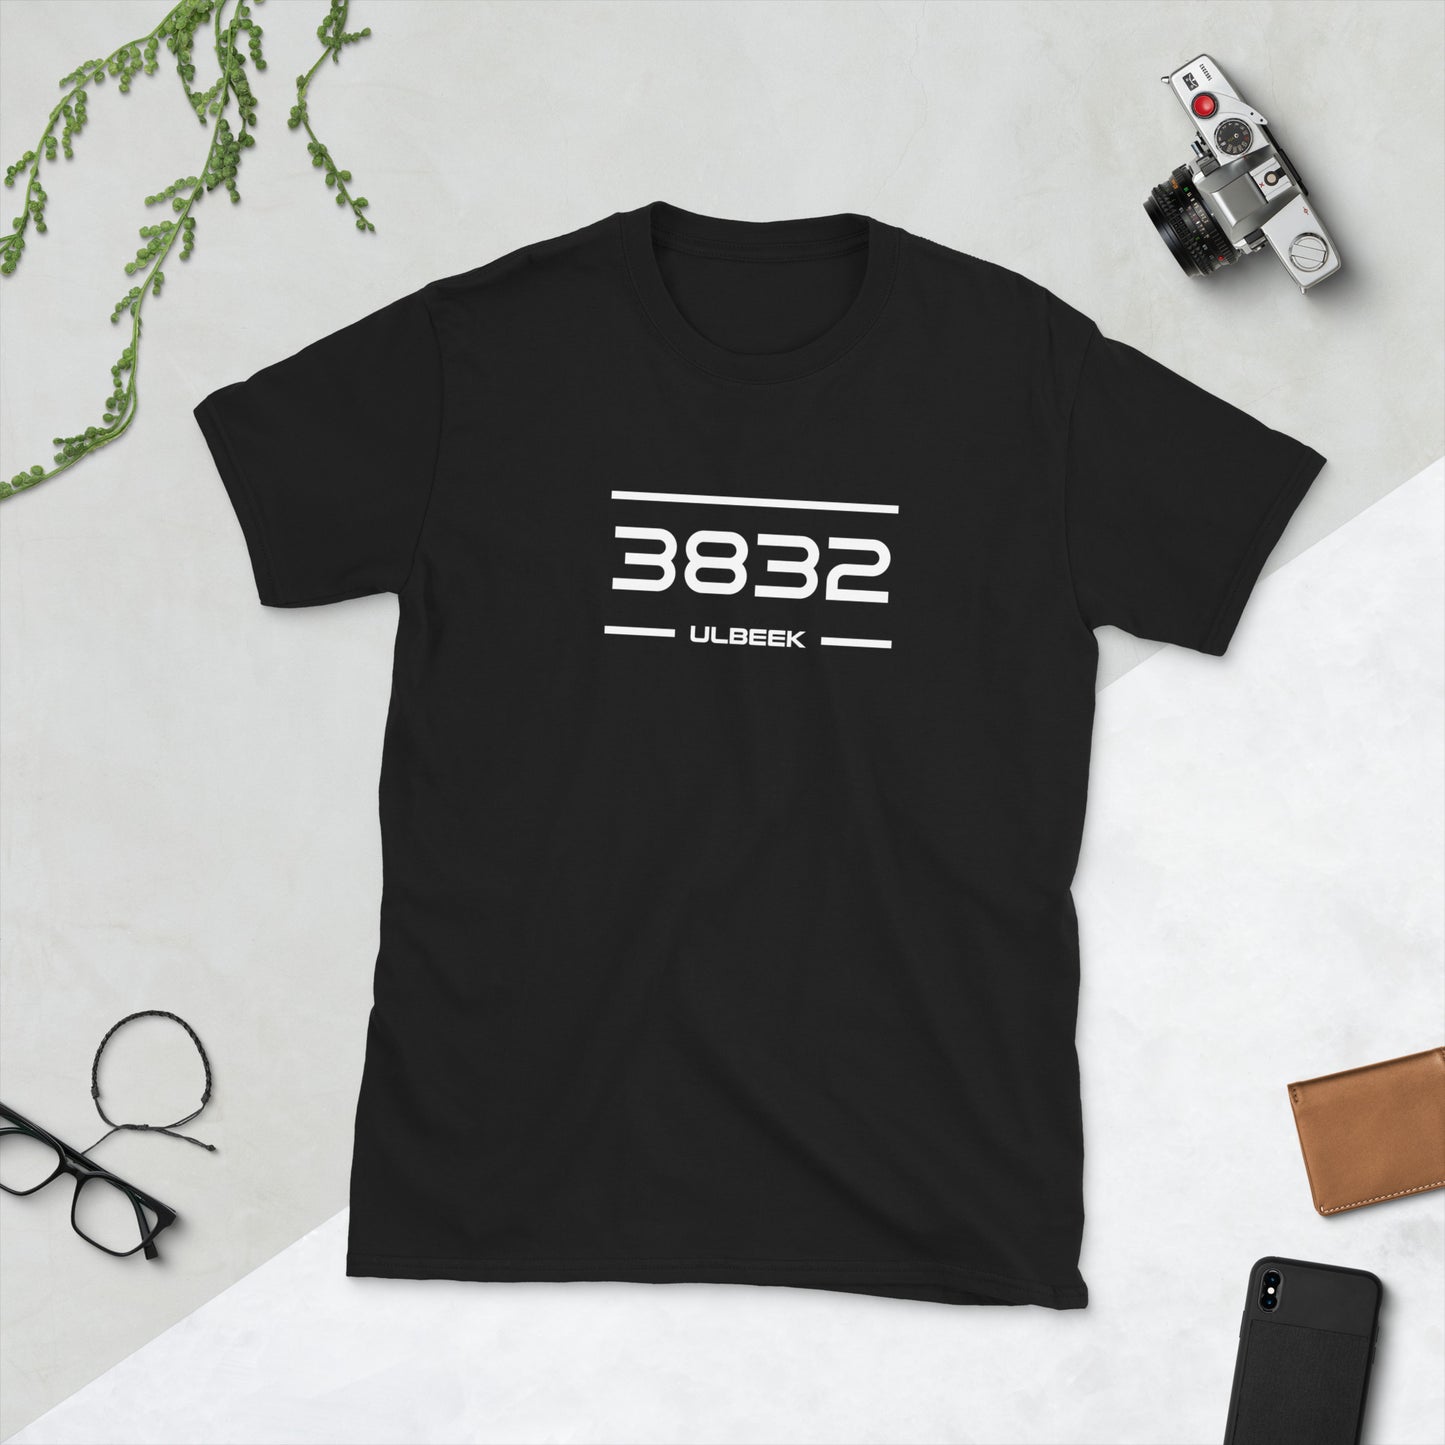 Tshirt - 3832 - Ulbeek